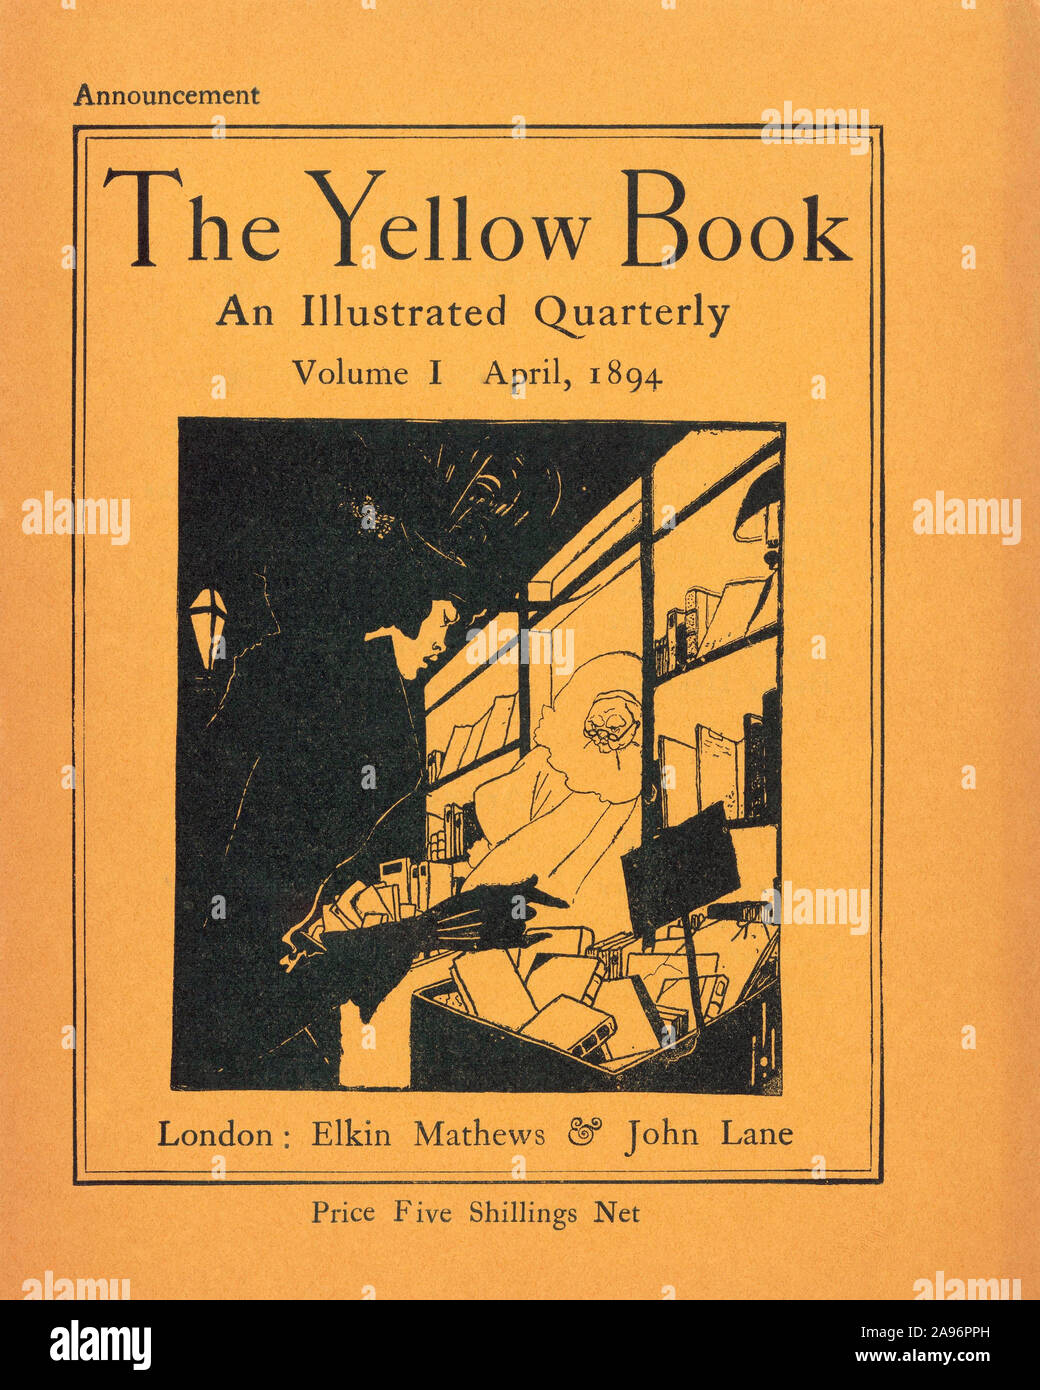 Une publicité pour le volume I du Livre jaune, qui a été publié le 15 avril 1894. Le magazine, un trimestriel illustré, les œuvres des artistes et des écrivains, et a cessé de paraître en 1897. Aubrey Beardsley, qui a conçu cette annonce, a été le premier éditeur du magazine art. Banque D'Images